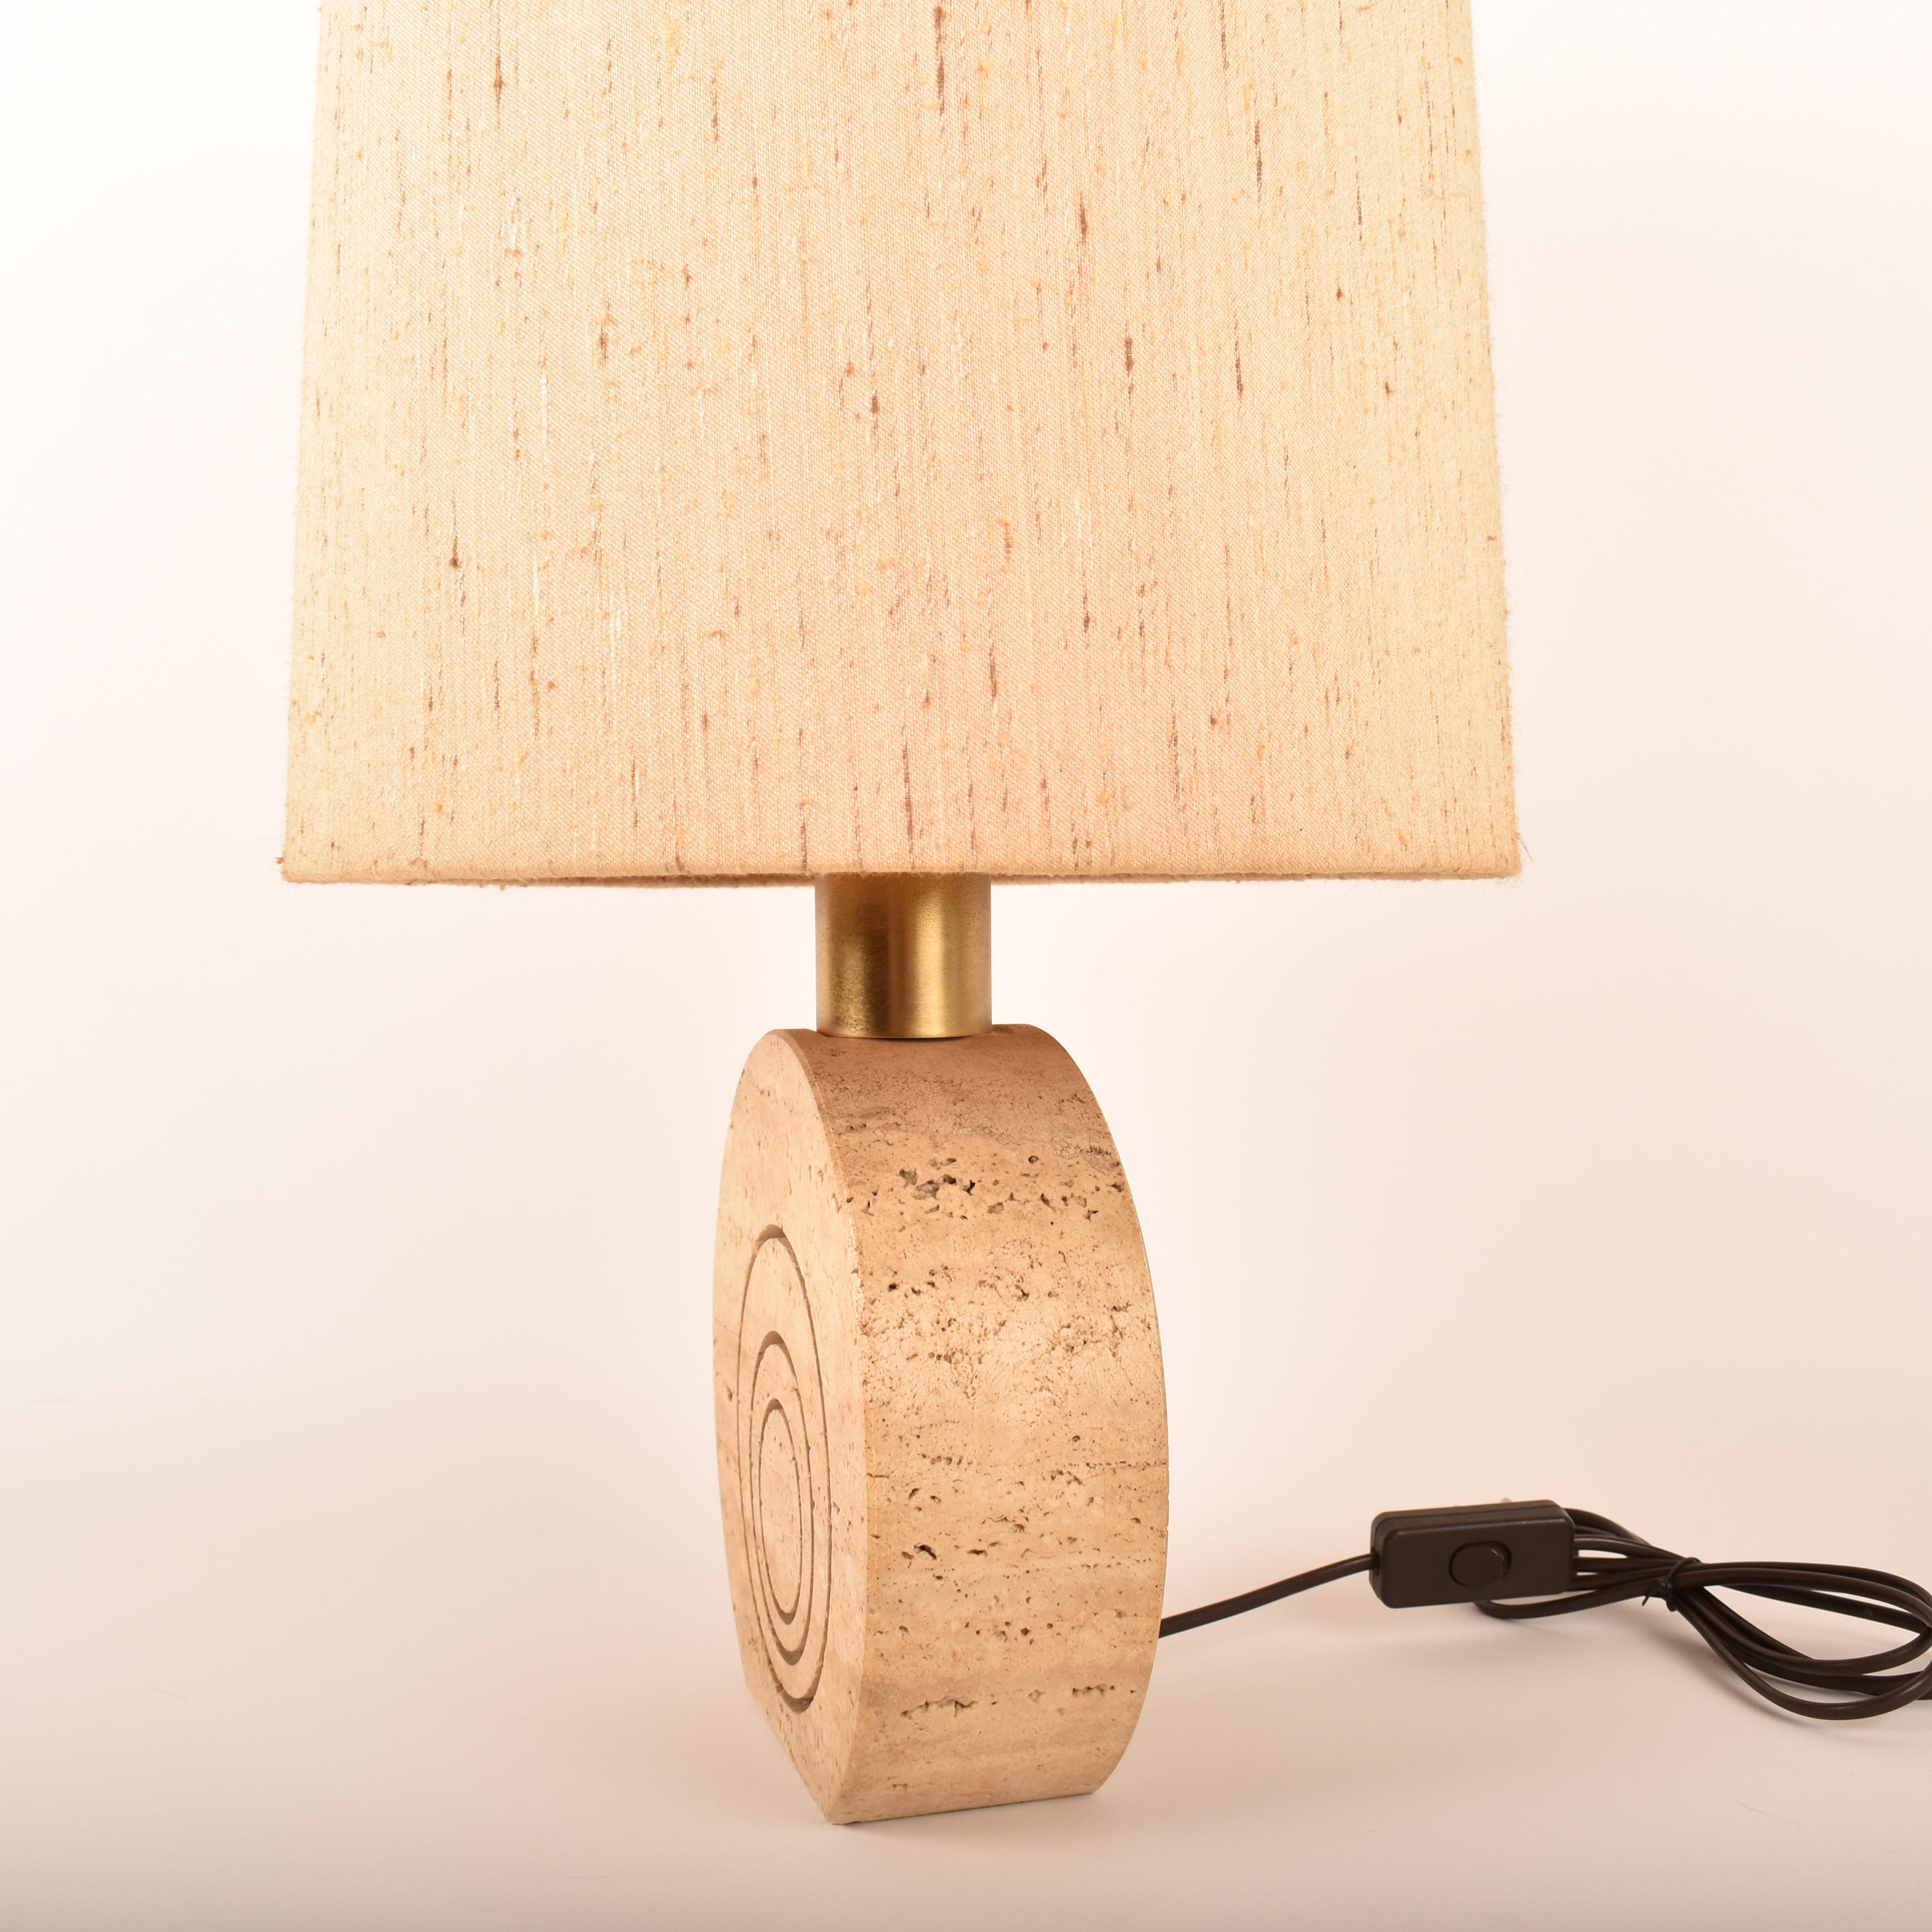 Lampe de table iconique, conçue et fabriquée par Fratelli Manelli en Italie vers 1970.
La lampe est en travertin, avec des gravures de cercles concentriques, de couleur crème. 
L'abat-jour est en très bon état, toujours d'origine, et donne une belle